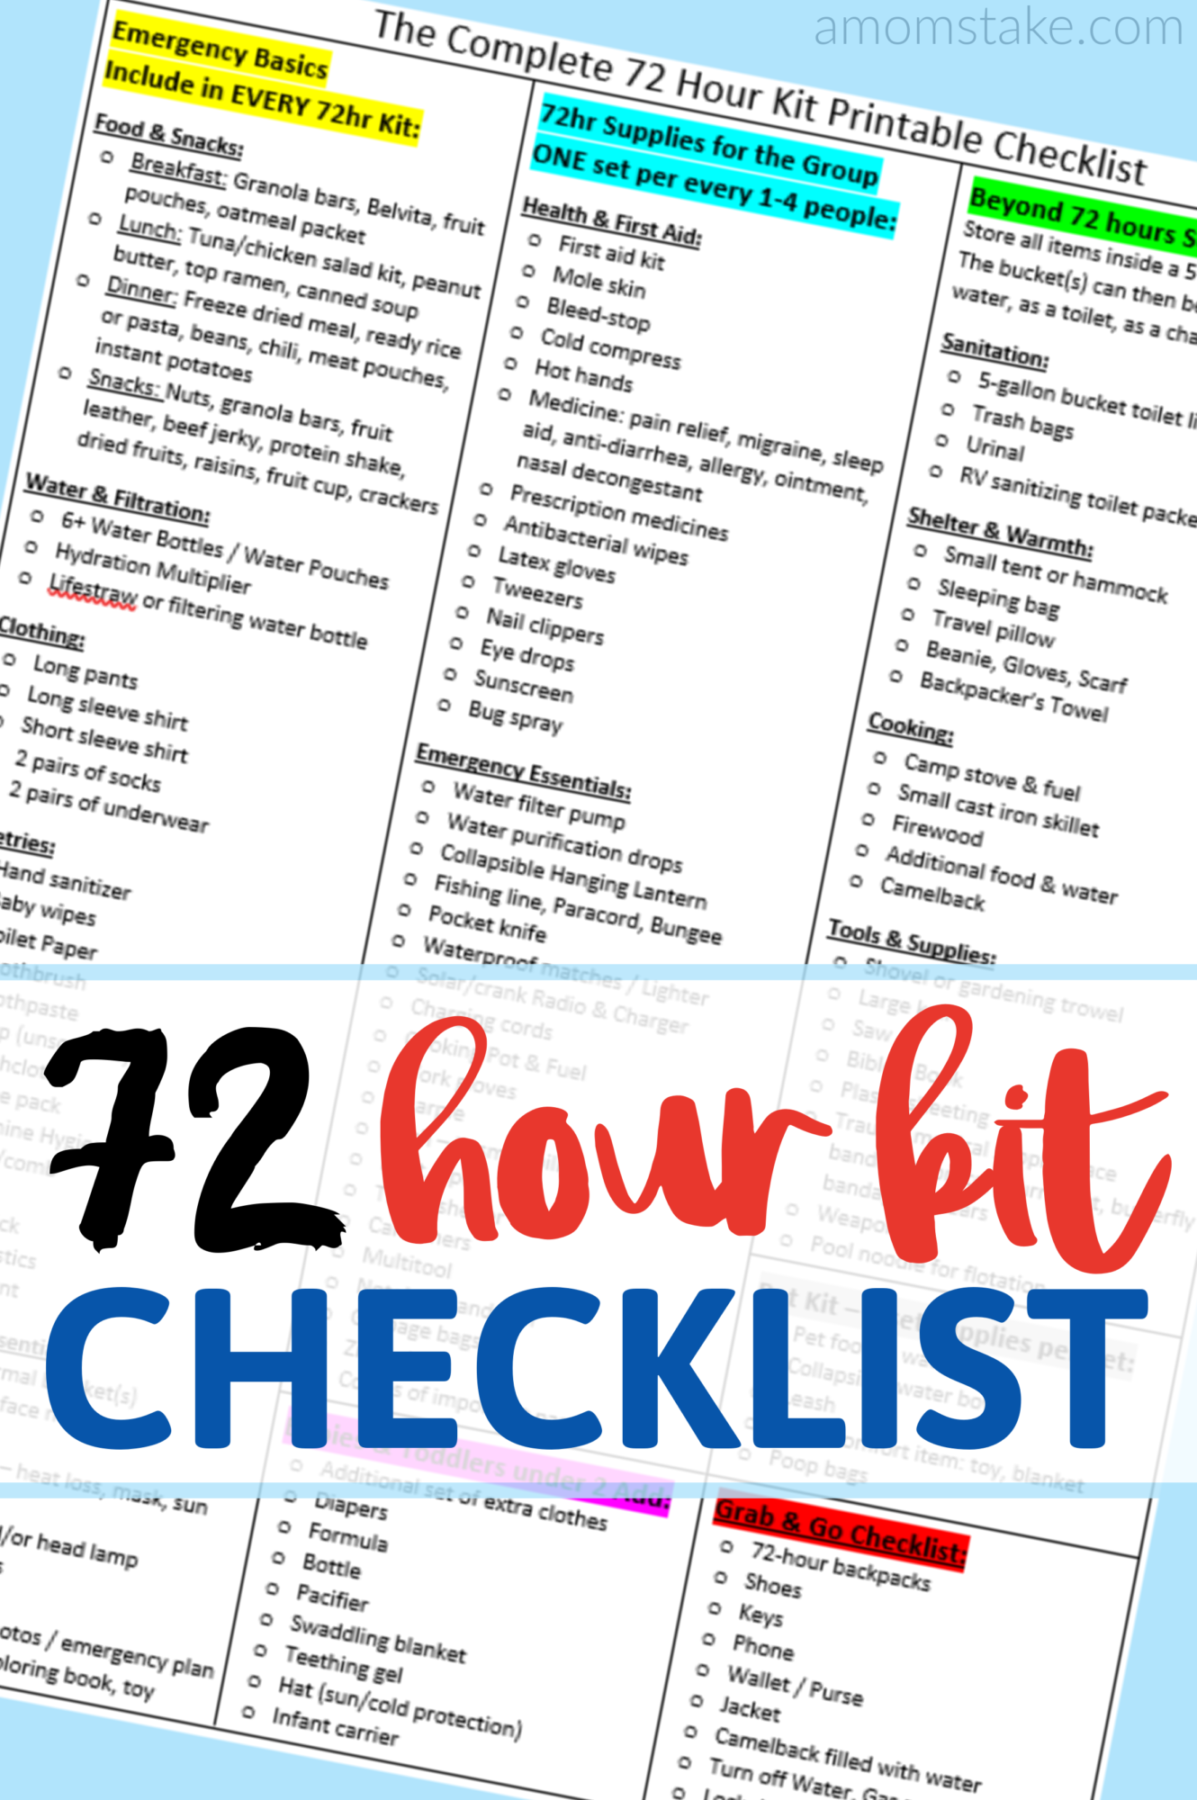 72 Hour Kits: The Complete Bug Out Bag List 72 Hour Kit Printable Checklist